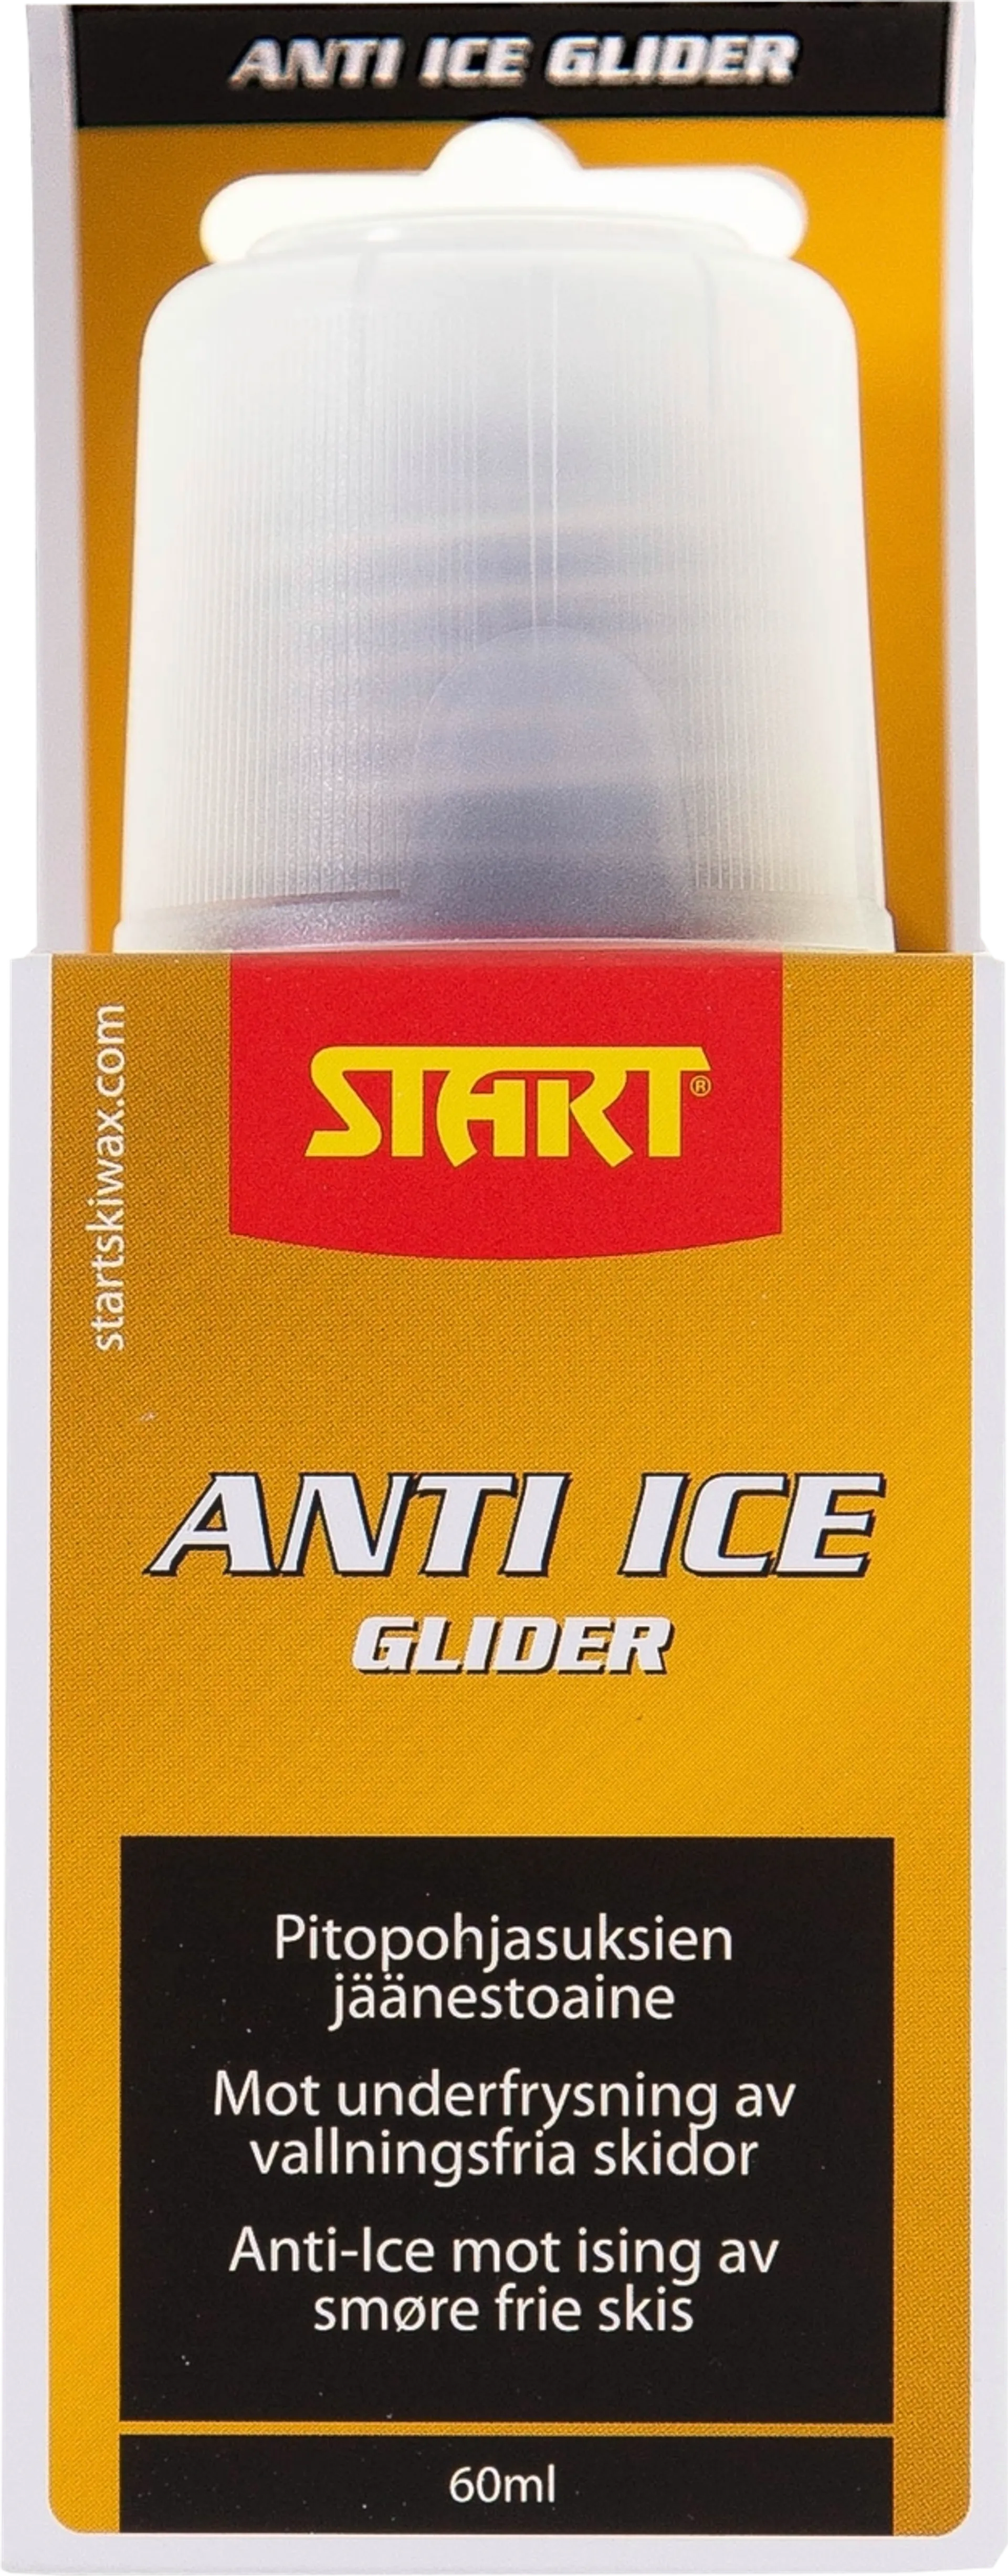 Start Anti Ice Glider pitopohjasuksien jäänestoaine 60 ml